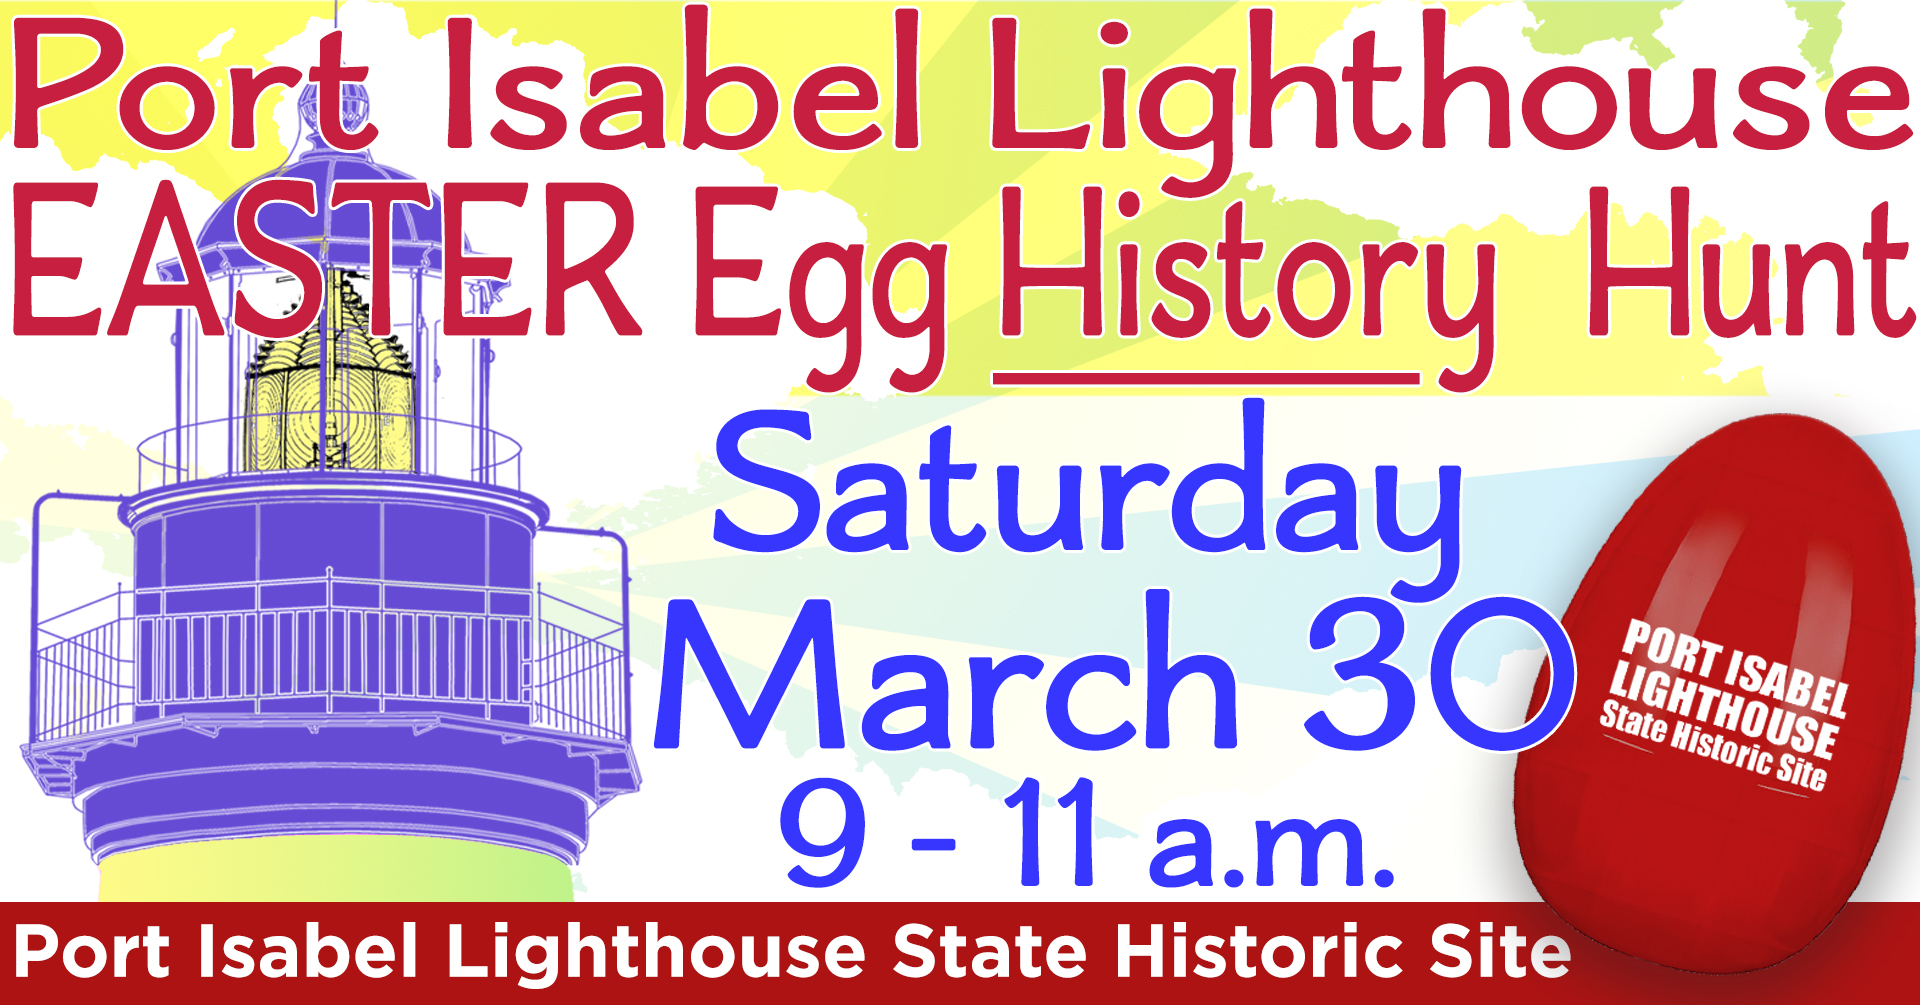 Lighthouse Easter Egg History Hunt 3/30